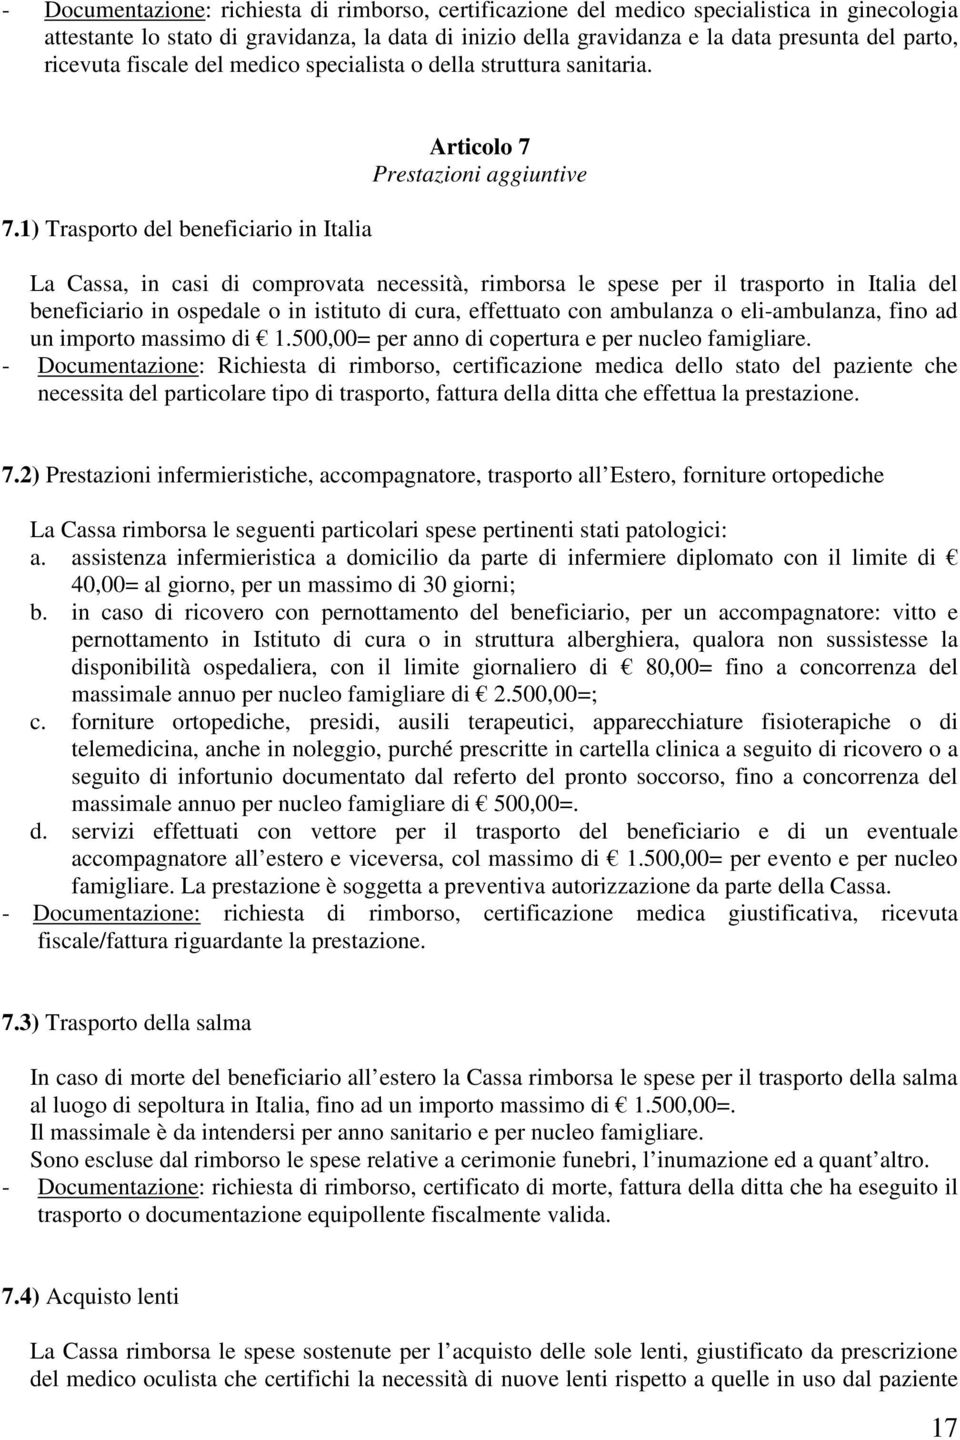 1) Trasporto del beneficiario in Italia Articolo 7 Prestazioni aggiuntive La Cassa, in casi di comprovata necessità, rimborsa le spese per il trasporto in Italia del beneficiario in ospedale o in